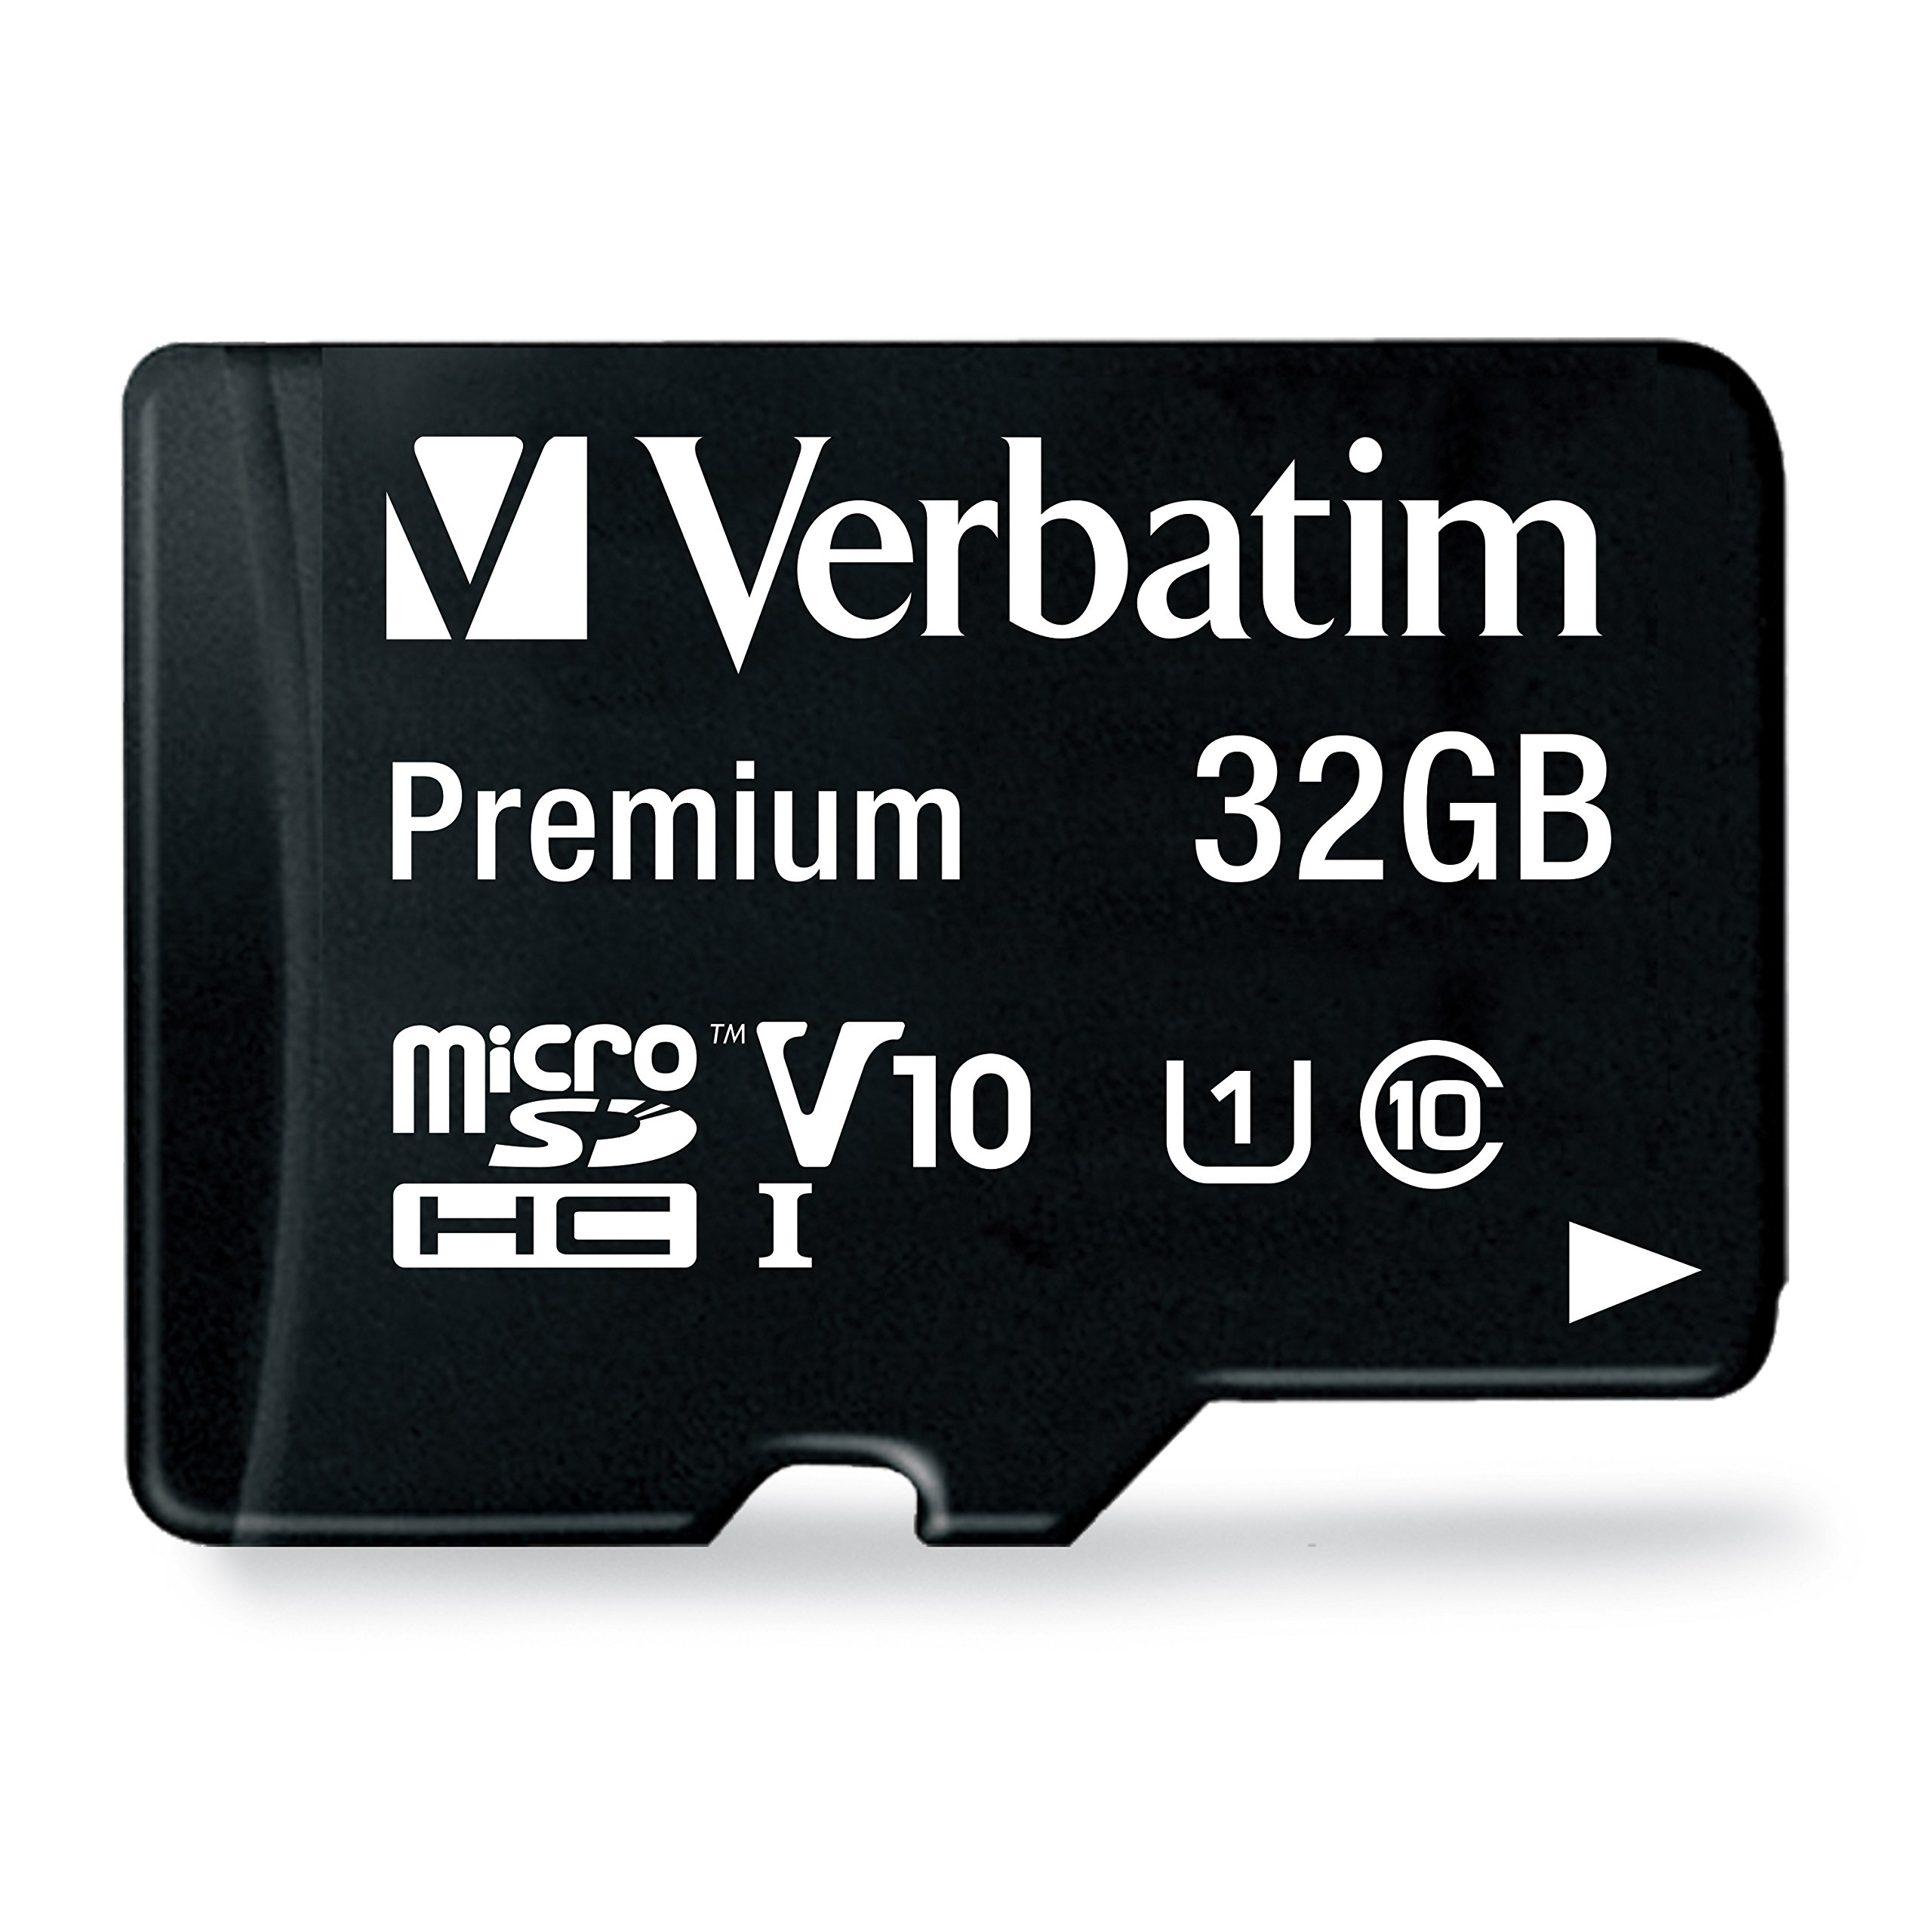 44083 Microsd Verbatim 32GB clase 10 con adapt Tarjeta de memoria microSD hc premium de 32 GB con adaptador. Clase de velocidad de video v10 - admite la grabación en full HD (1080p) interfaz uhs-i, con velocidad u1. Velocidad de lectura de hasta 90 MB/S.                                                 ador                                    